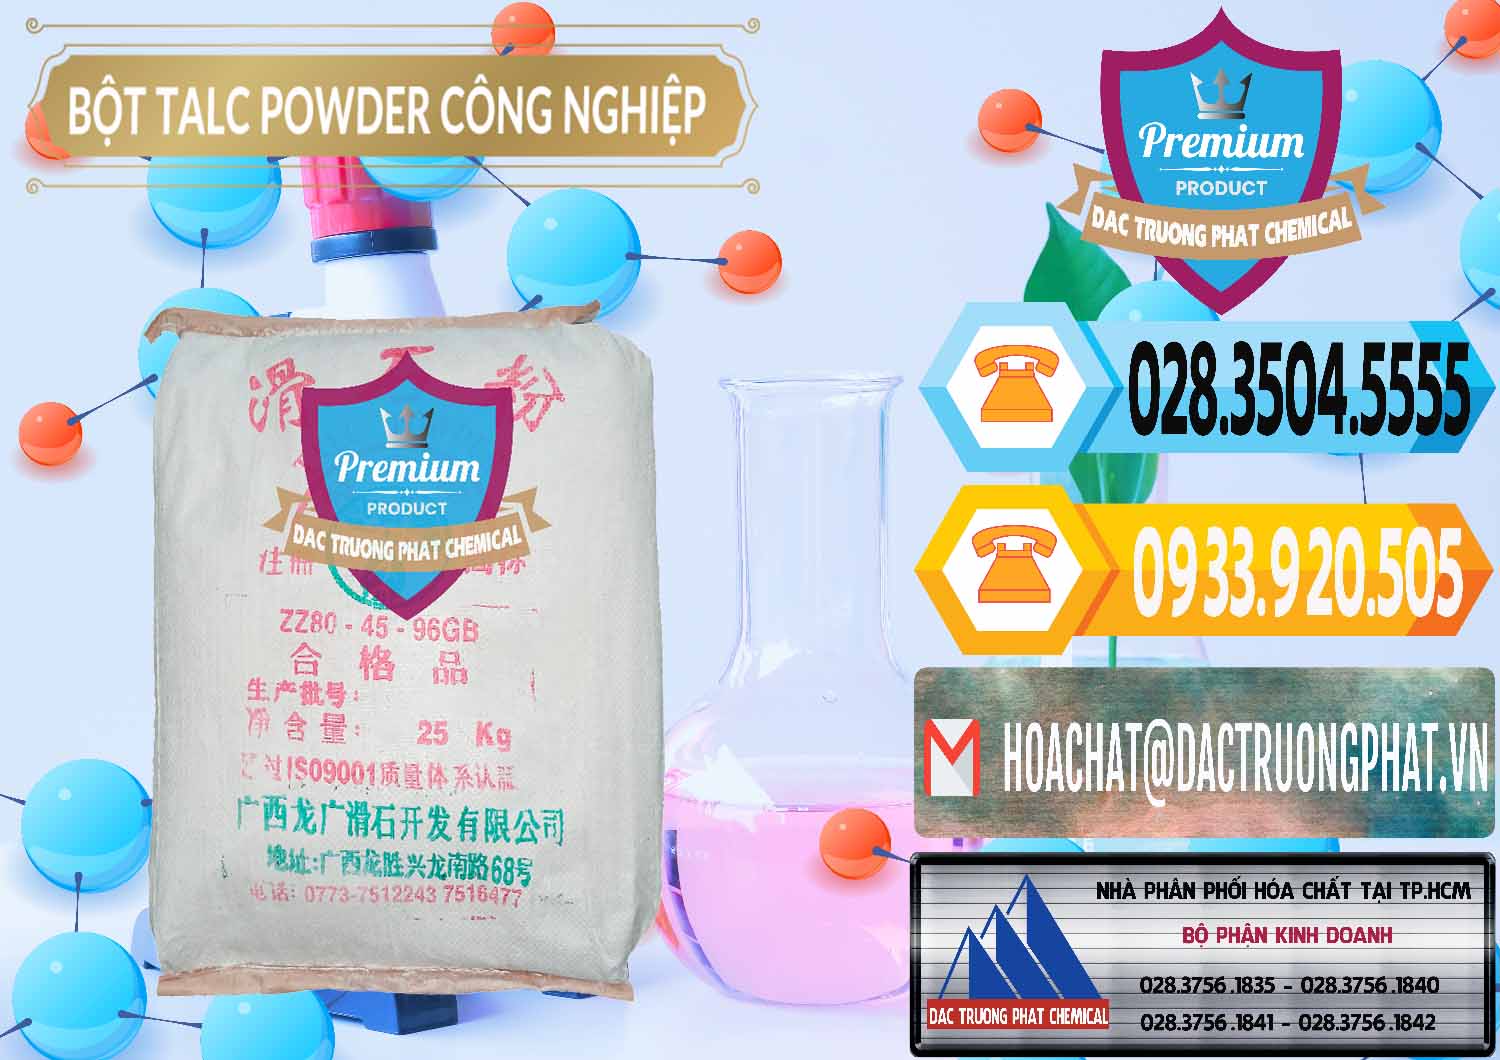 Nơi chuyên phân phối và bán Bột Talc Powder Công Nghiệp Trung Quốc China - 0037 - Cty phân phối _ cung cấp hóa chất tại TP.HCM - hoachattayrua.net